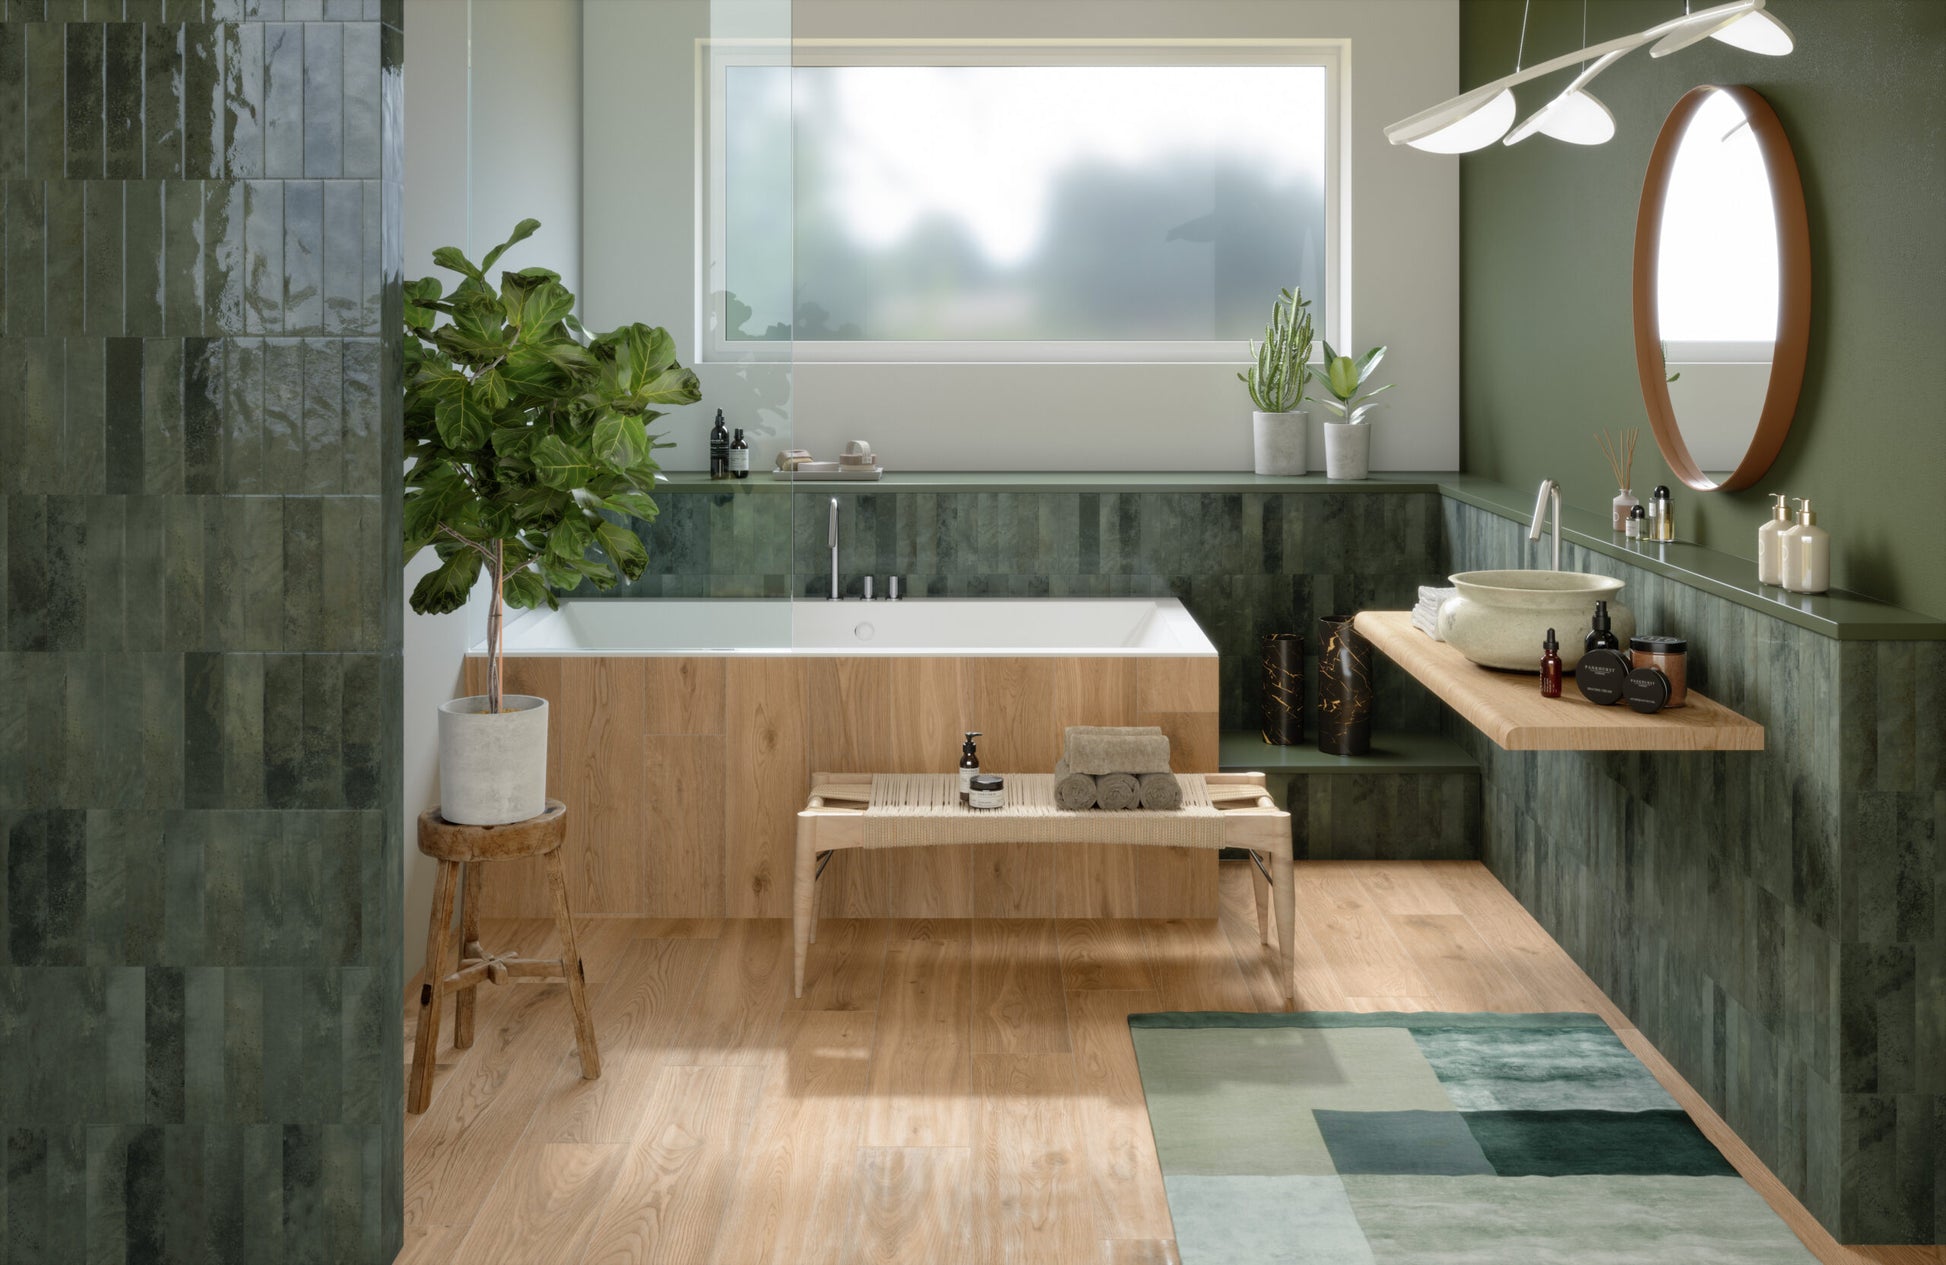 Baño de estilo Zen en tonos verdes, suelo de madera natural y una iluminación blanca, destacada por lámparas colgantes en color blanco.